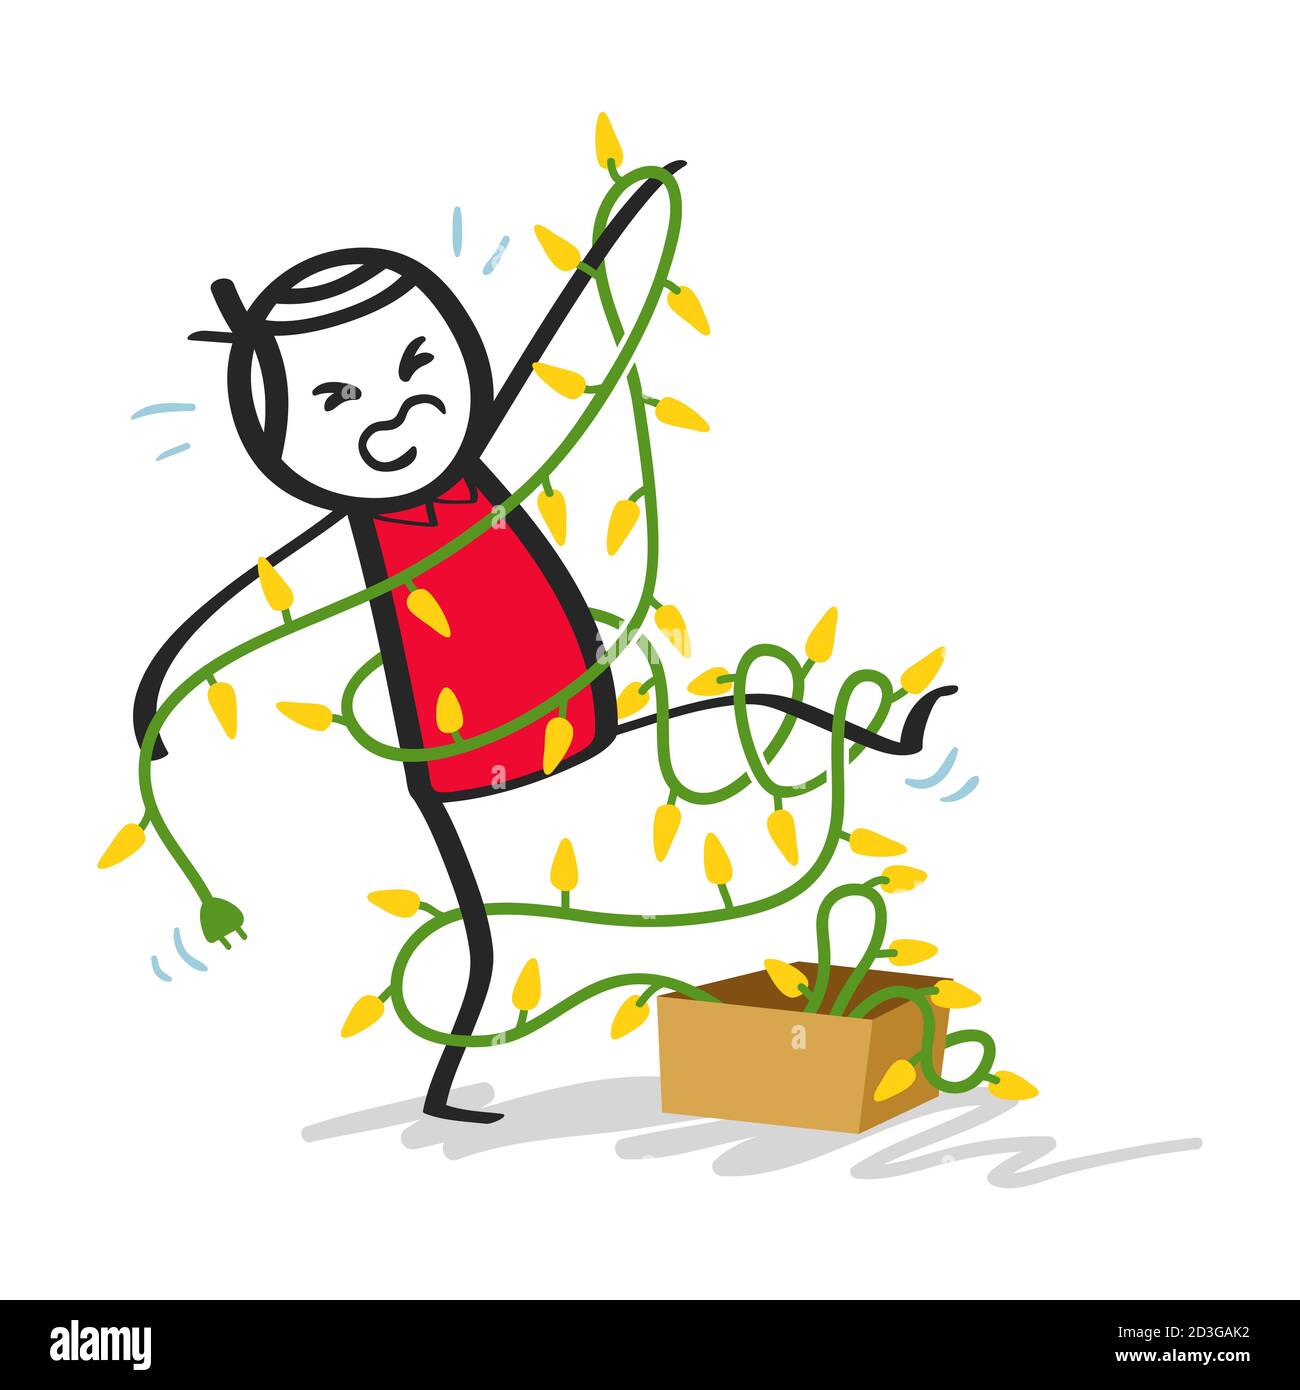 Molesto y torpe palo hombre enredado en la cadena de luces de Navidad, dibujos animados divertidos, anual preparaciones de Navidad va bien Ilustración del Vector